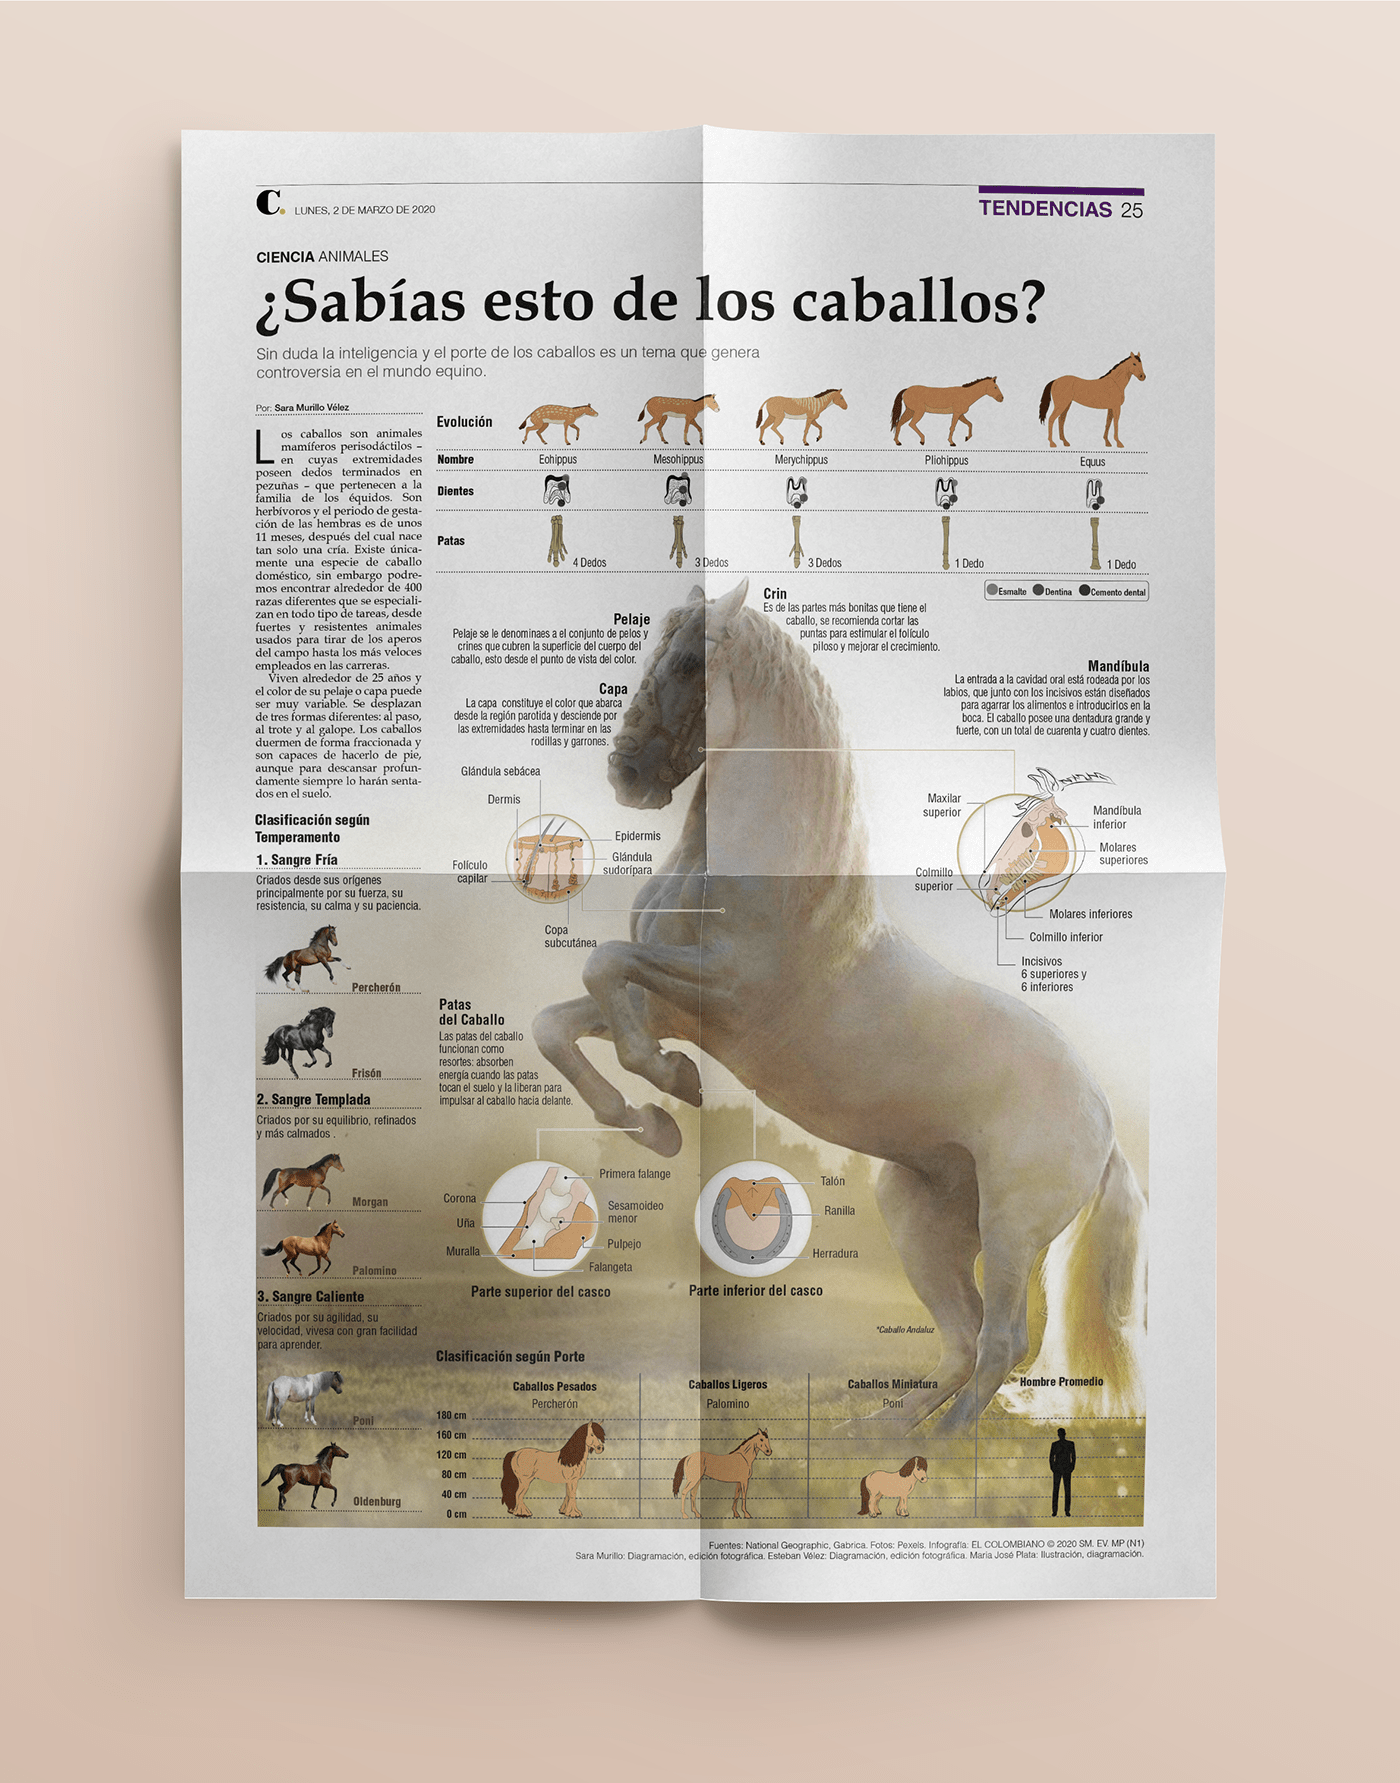 caballos diagramación diagramming horse ilustracion infografia infográficos infographic newspaper periodico